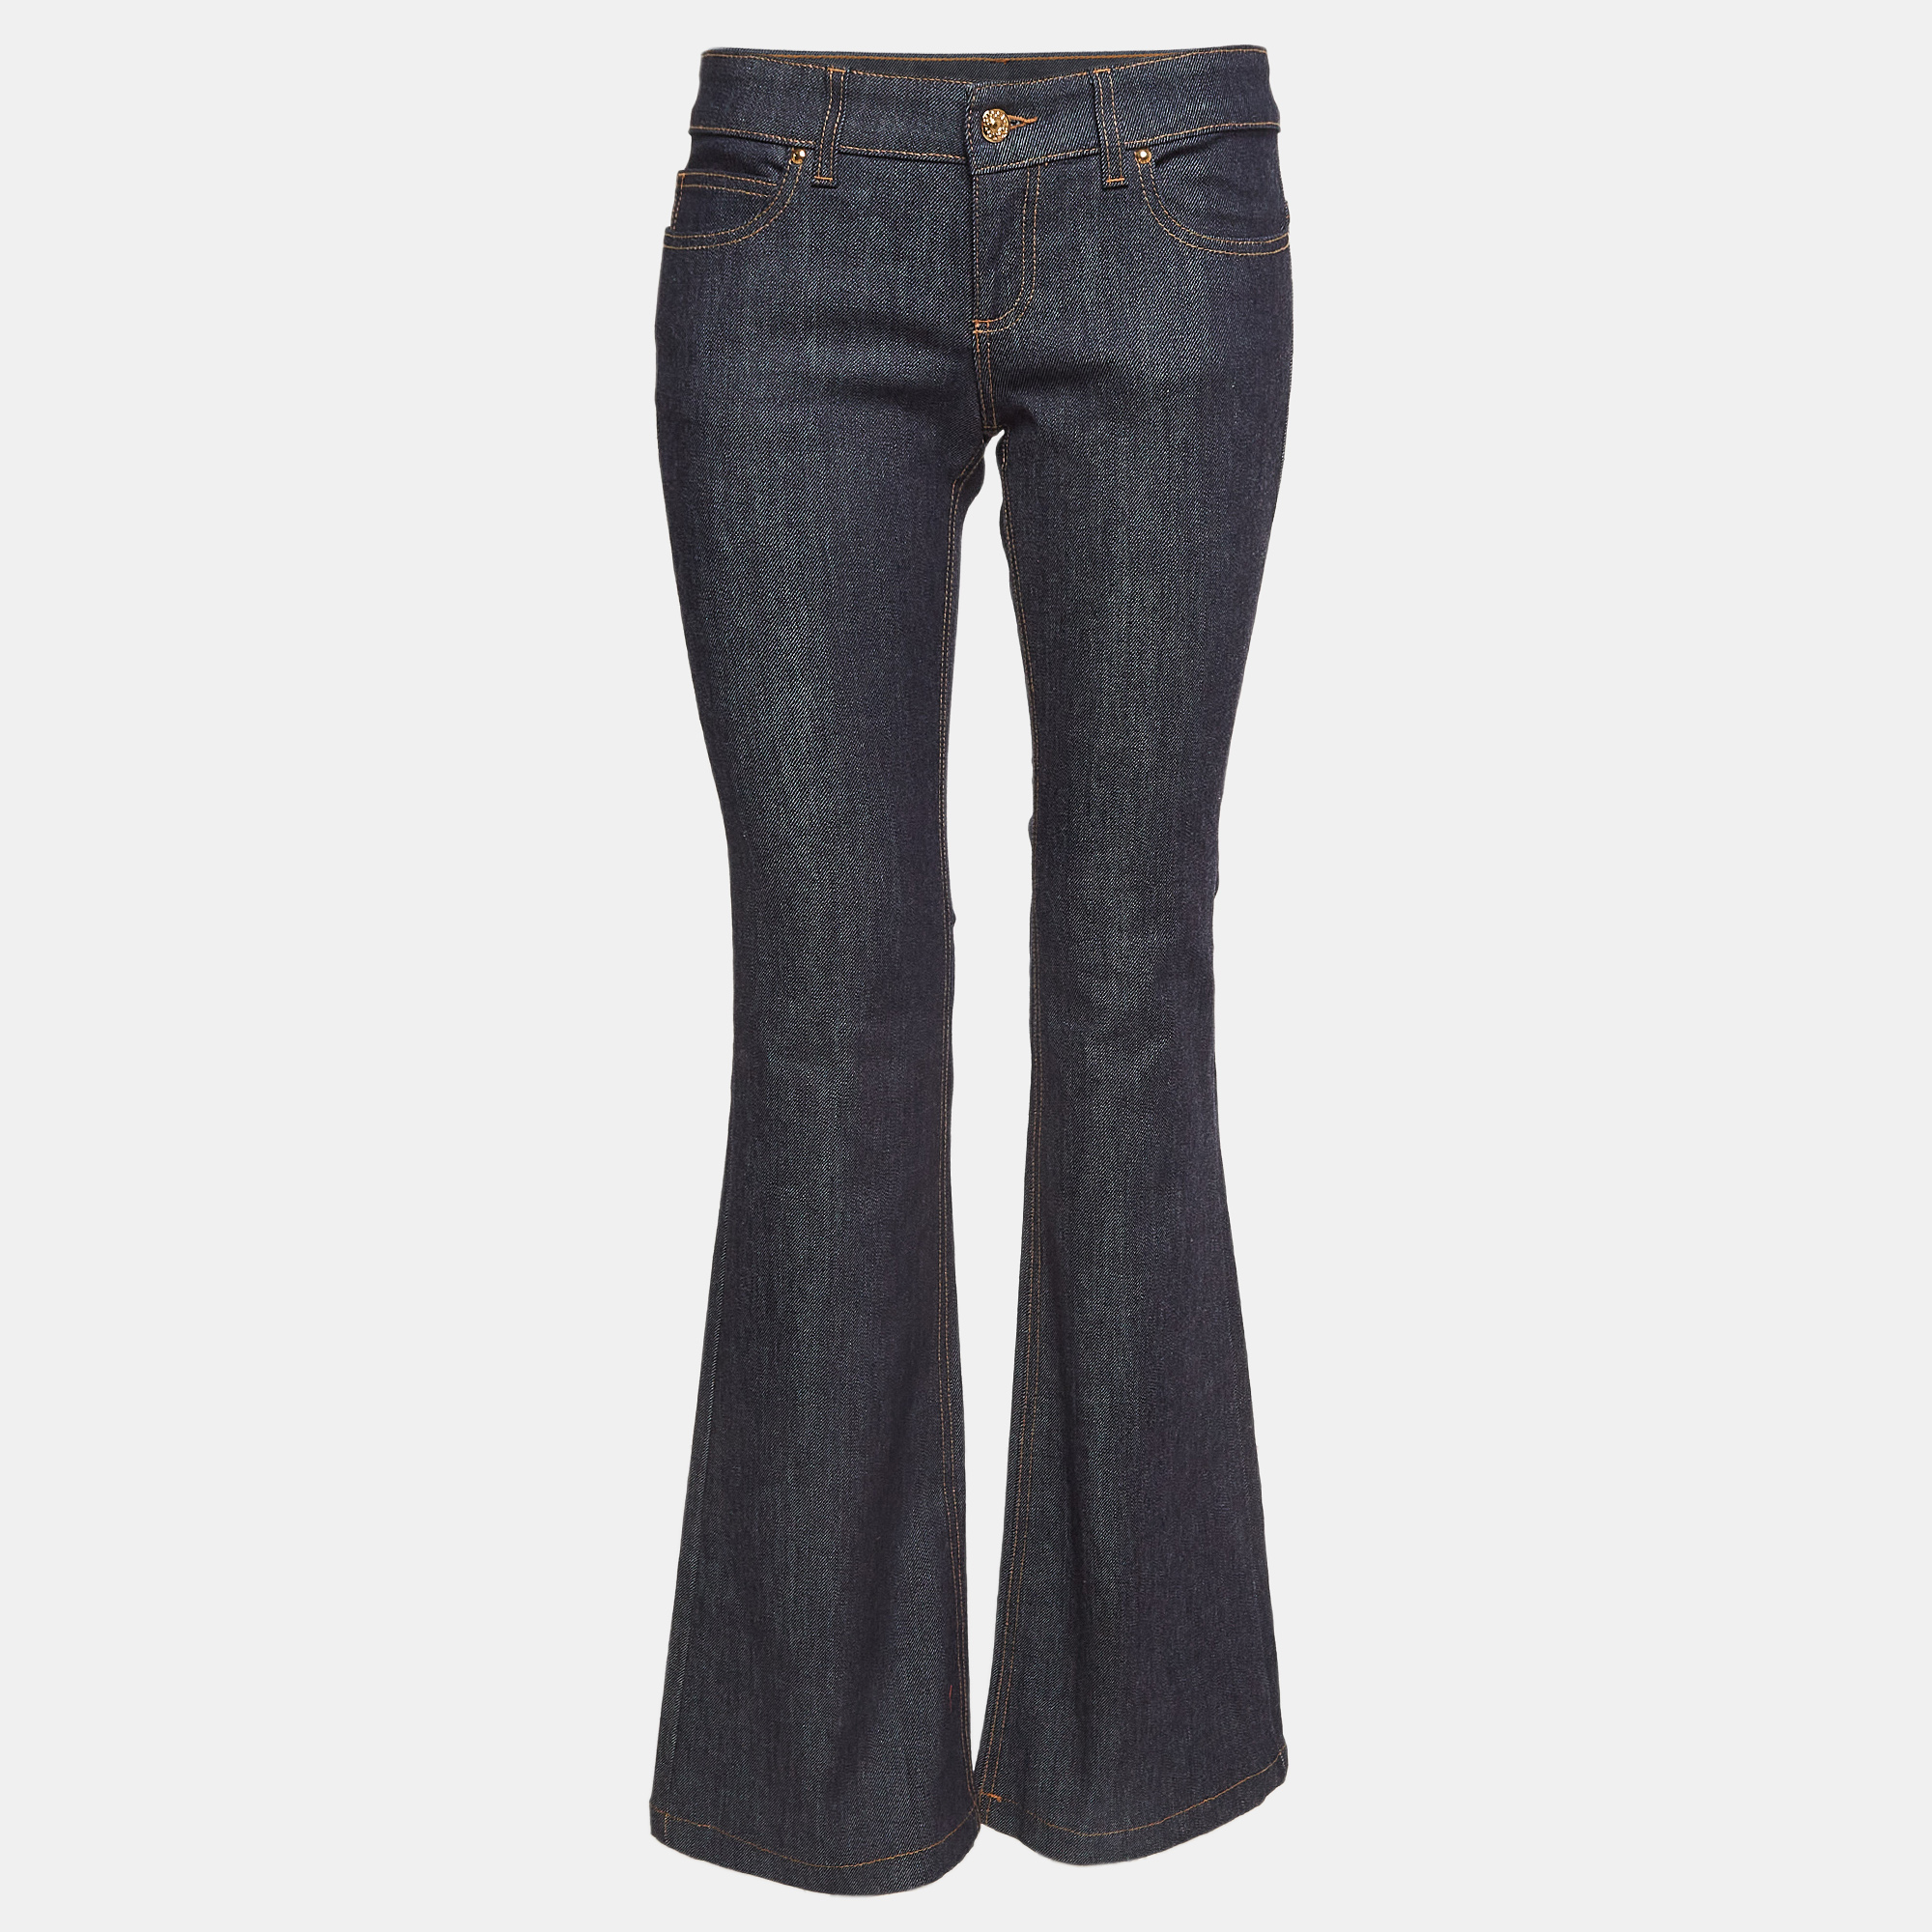 Gucci navy blue denim flared jeans m waist 42"